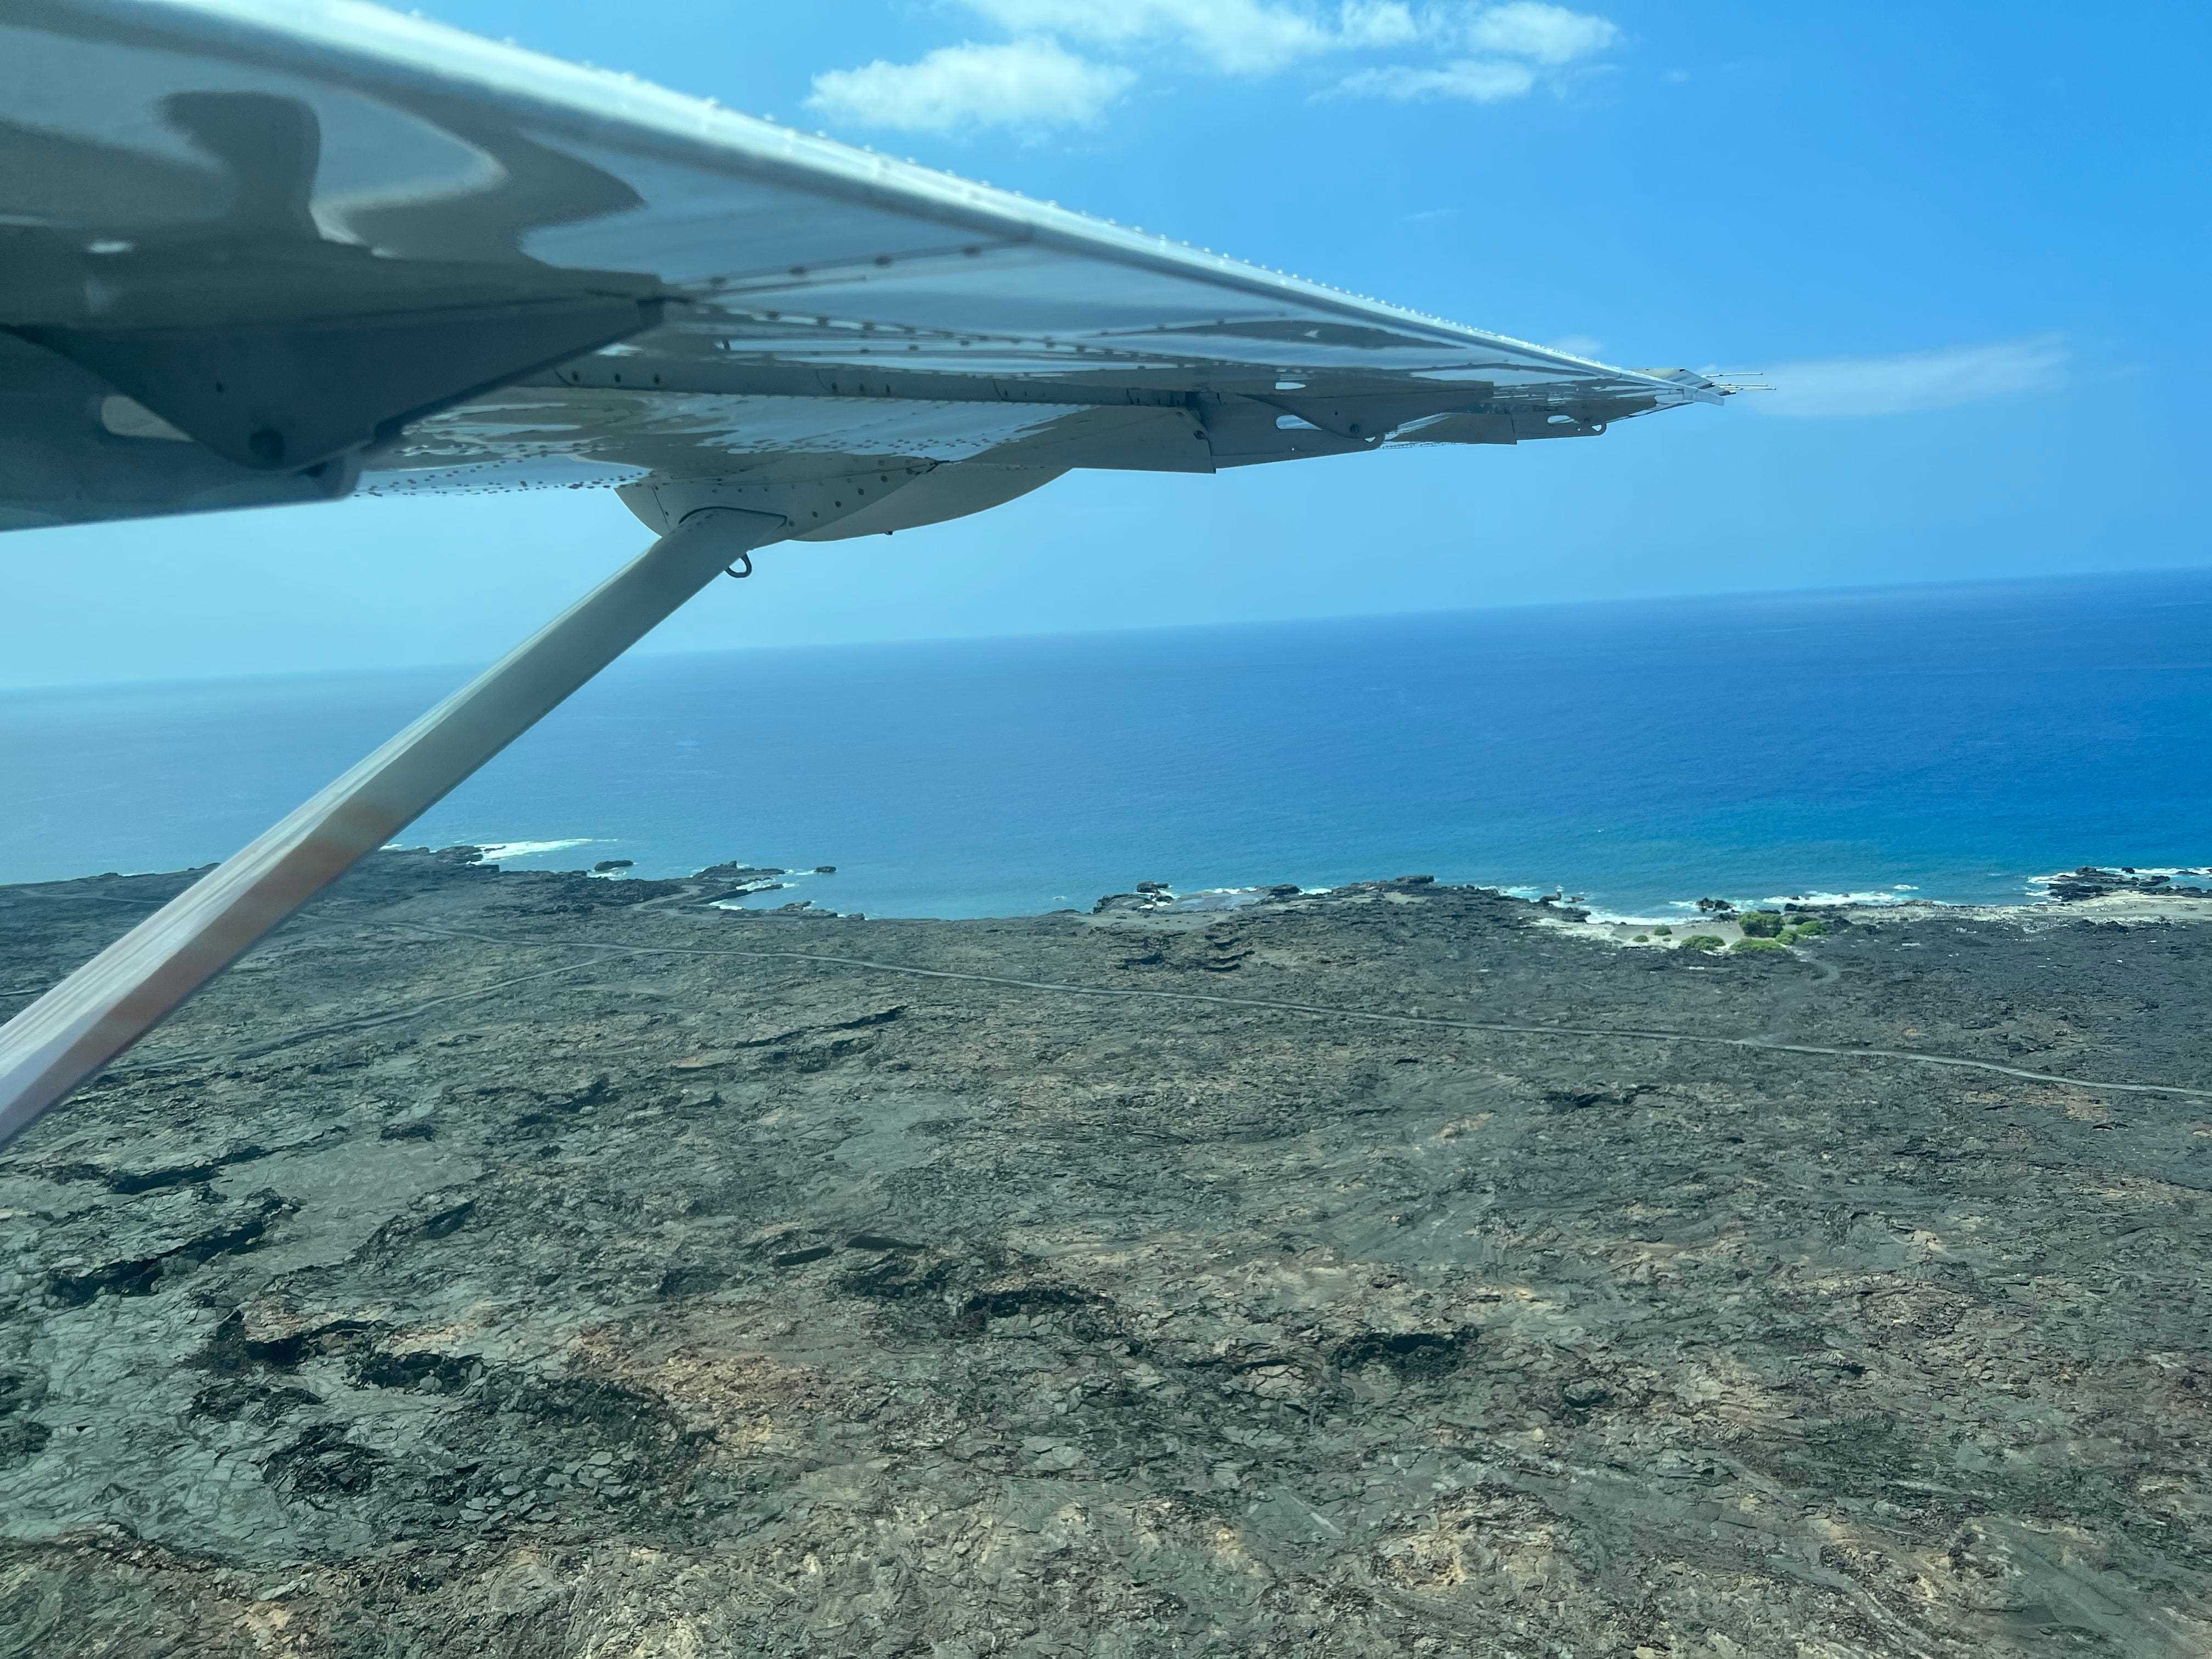 Blick auf bräunlichen Sand und Felsen mit der Flugzeugtragfläche darüber.